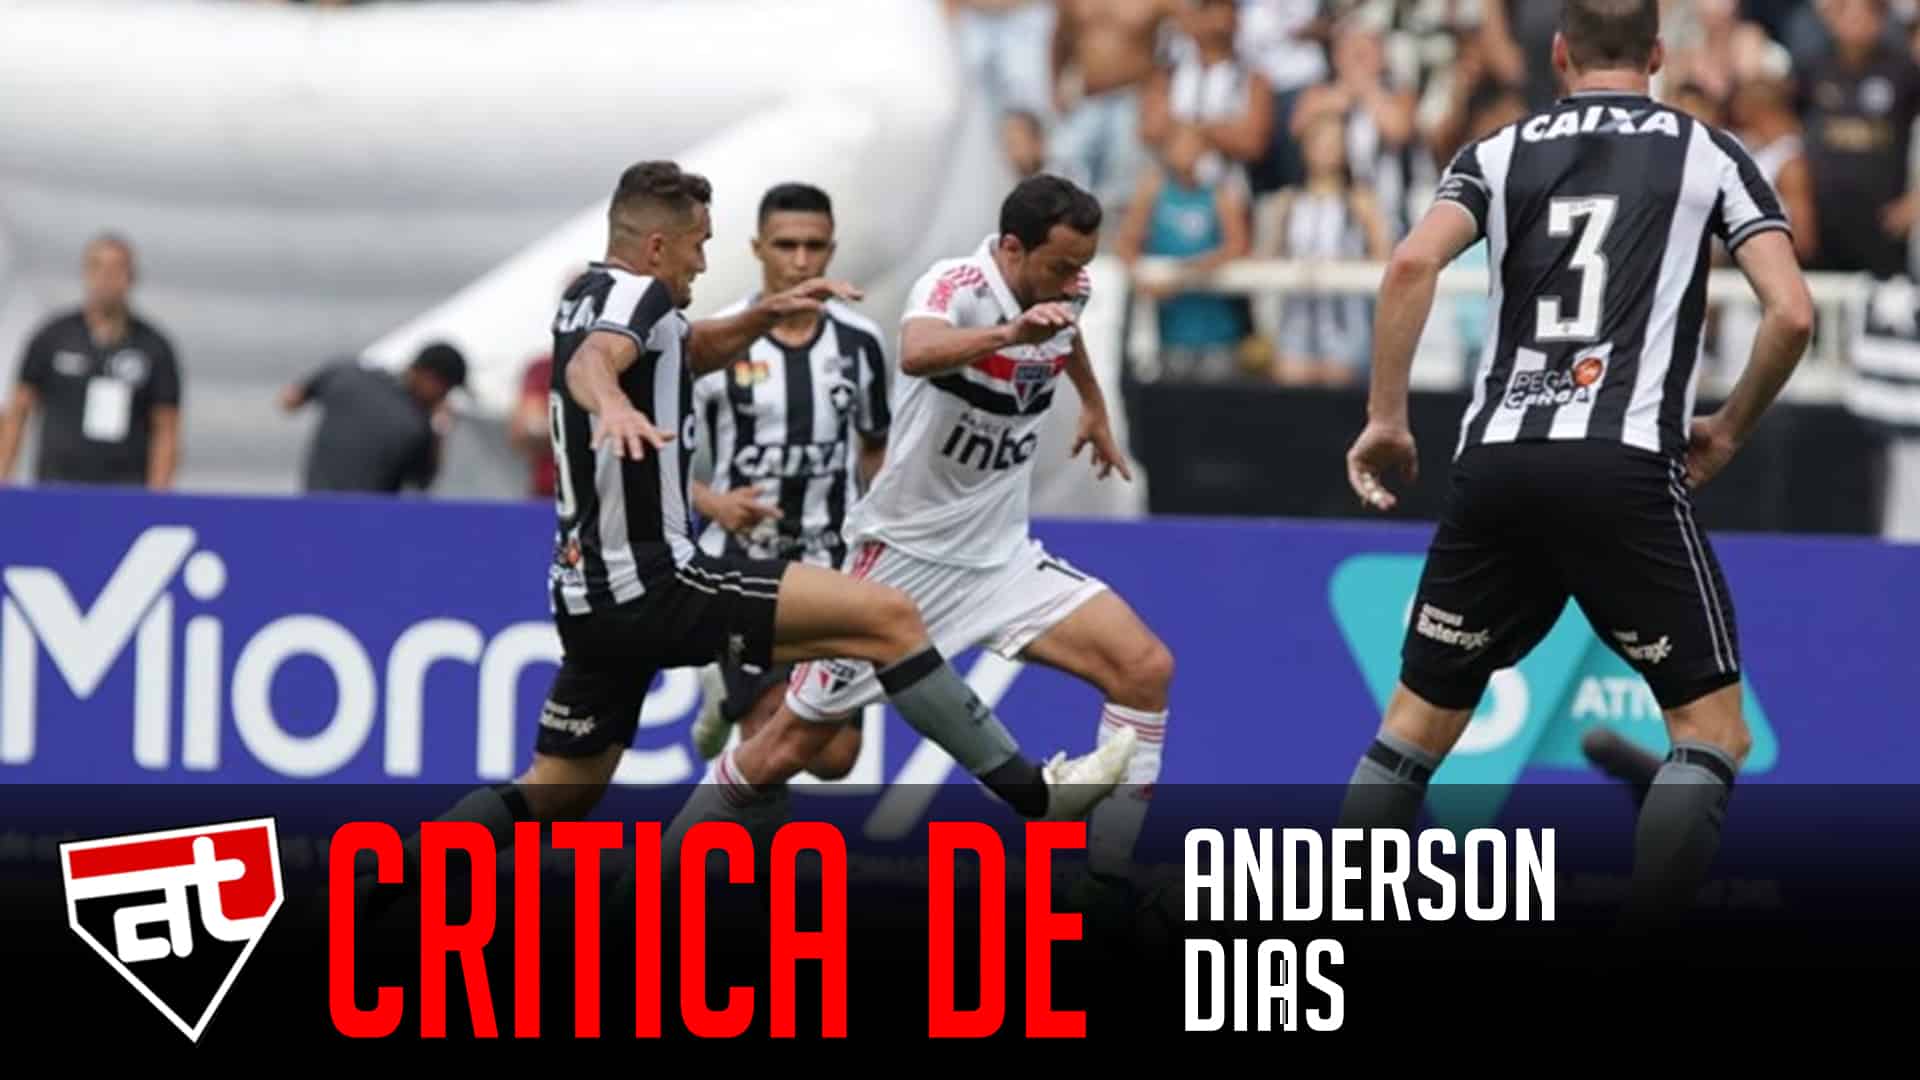 Critica Anderson Dias | Arquibancada Tricolor